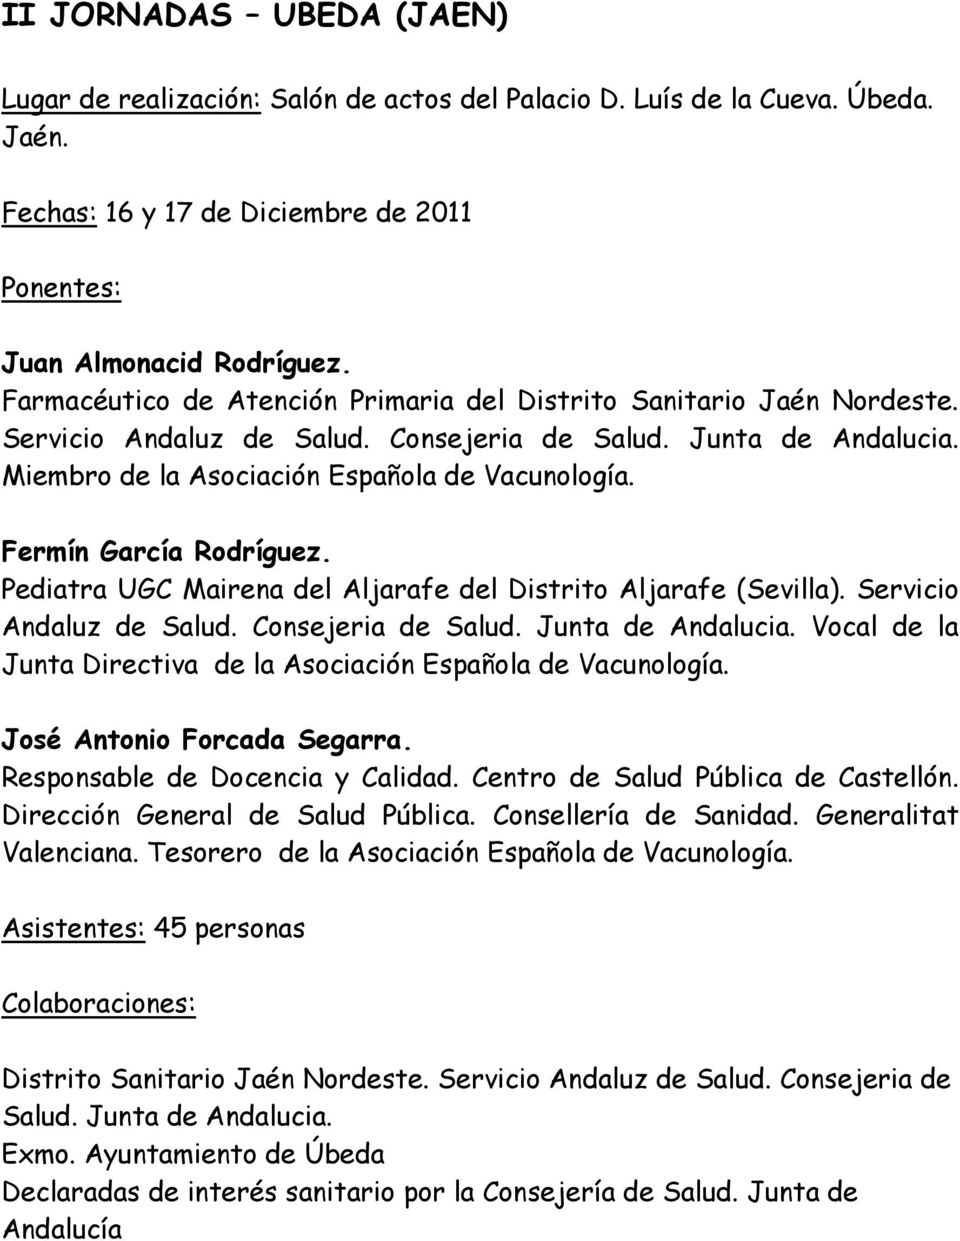 Fermín García Rodríguez. Pediatra UGC Mairena del Aljarafe del Distrito Aljarafe (Sevilla). Servicio Andaluz de Salud. Consejeria de Salud. Junta de Andalucia.